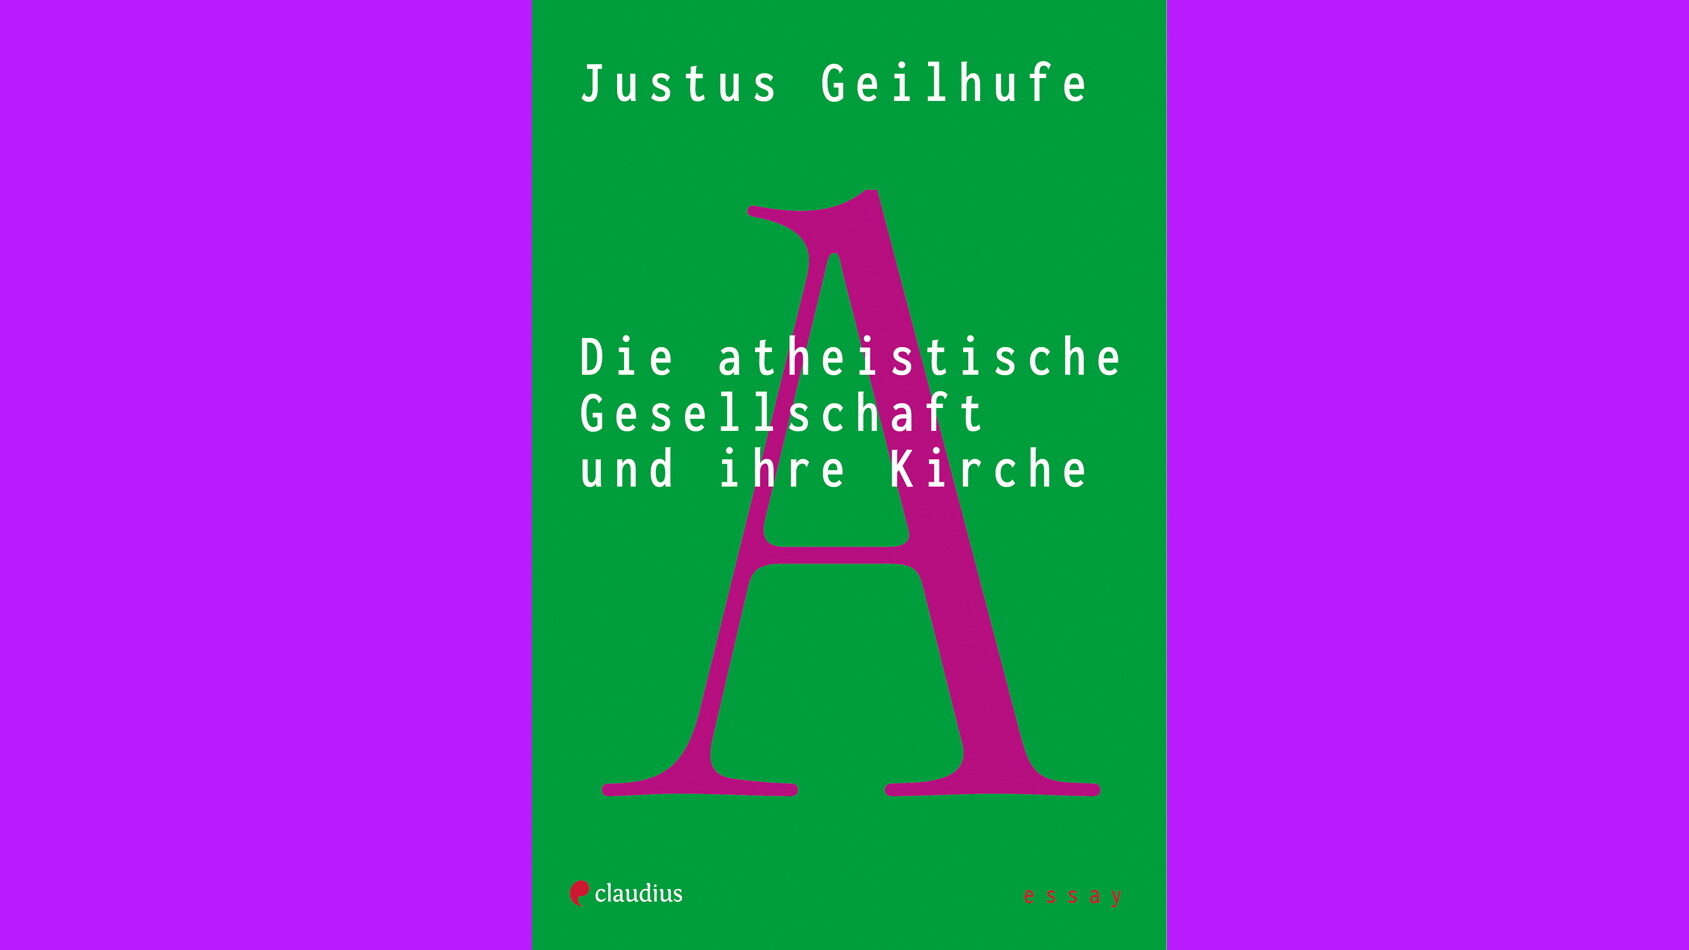 Die atheistische Gesellschaft und ihre Kirche, claudius Verlag, Justus Geilhufe, Literatur, Gesellschaftsbuch, Religion, Theologie